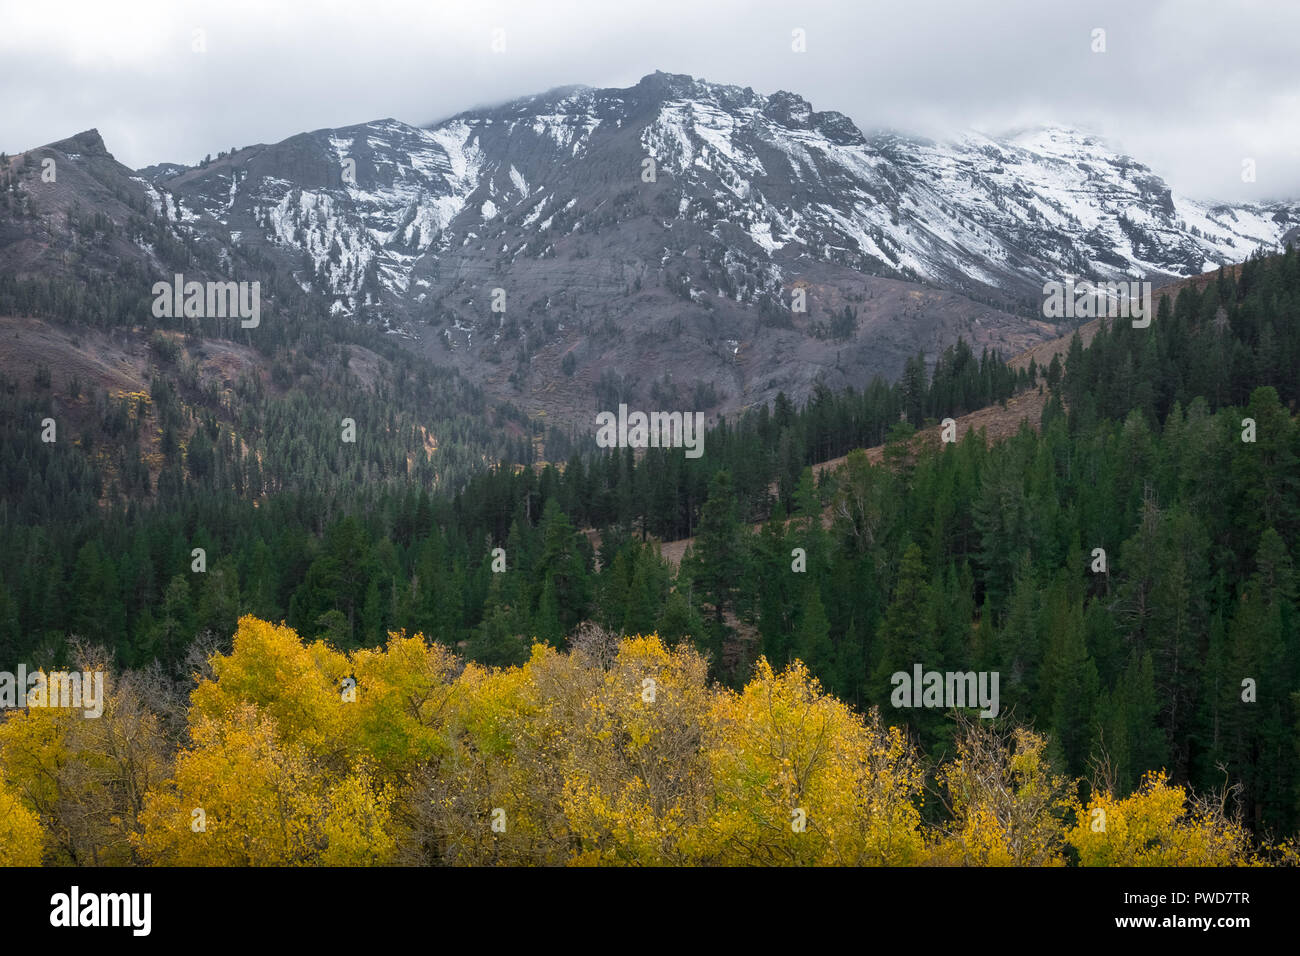 Peupliers jaune avec pic enneigé de la Sierra Nevada à l'automne - Couleurs d'automne sur Sonora Pass, l'autoroute 108 Banque D'Images